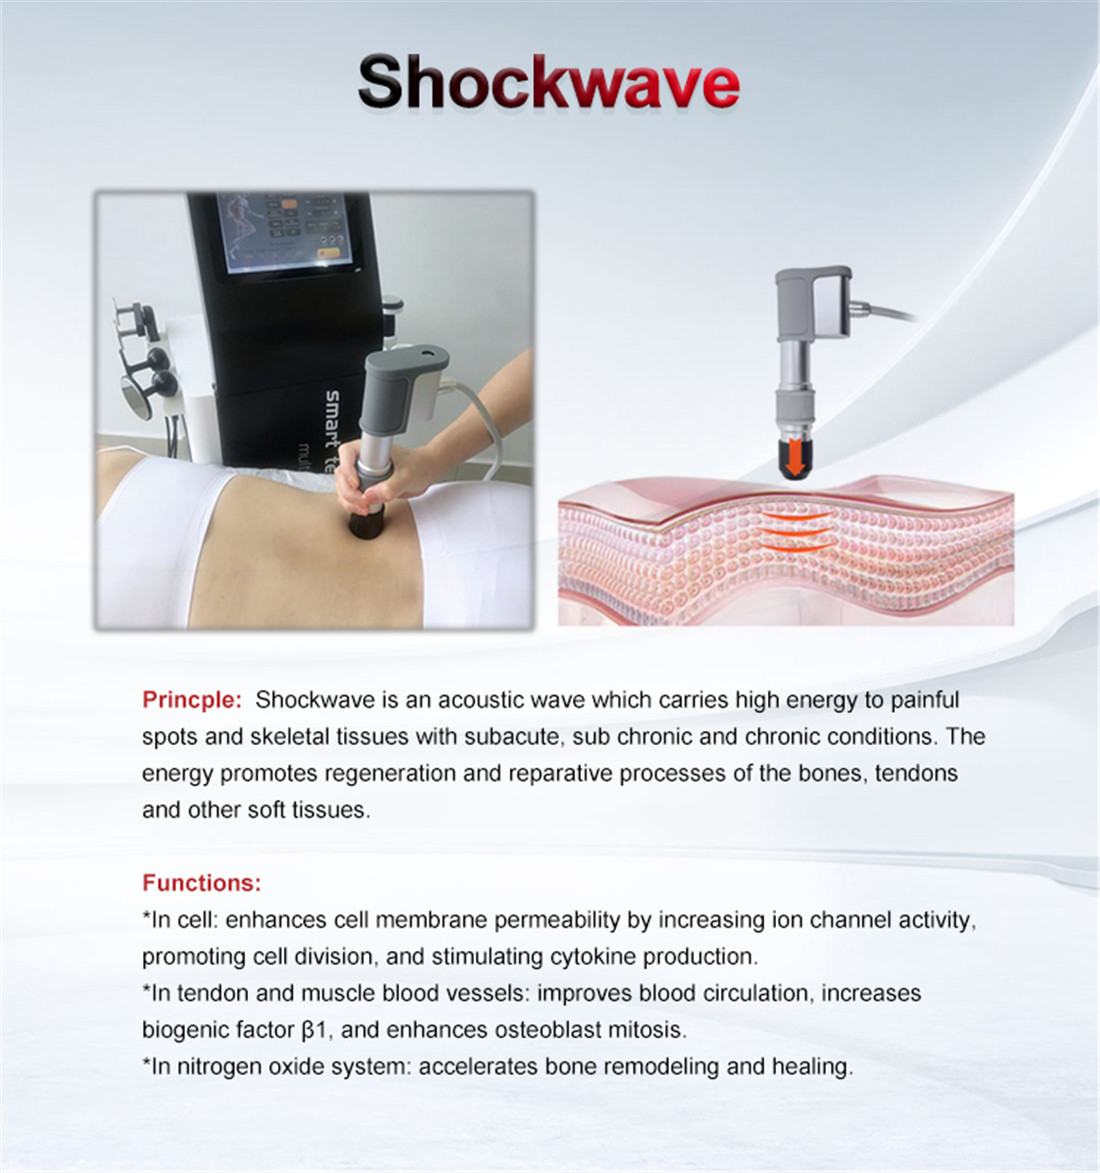 Shockwave Device 01 (5)2vy